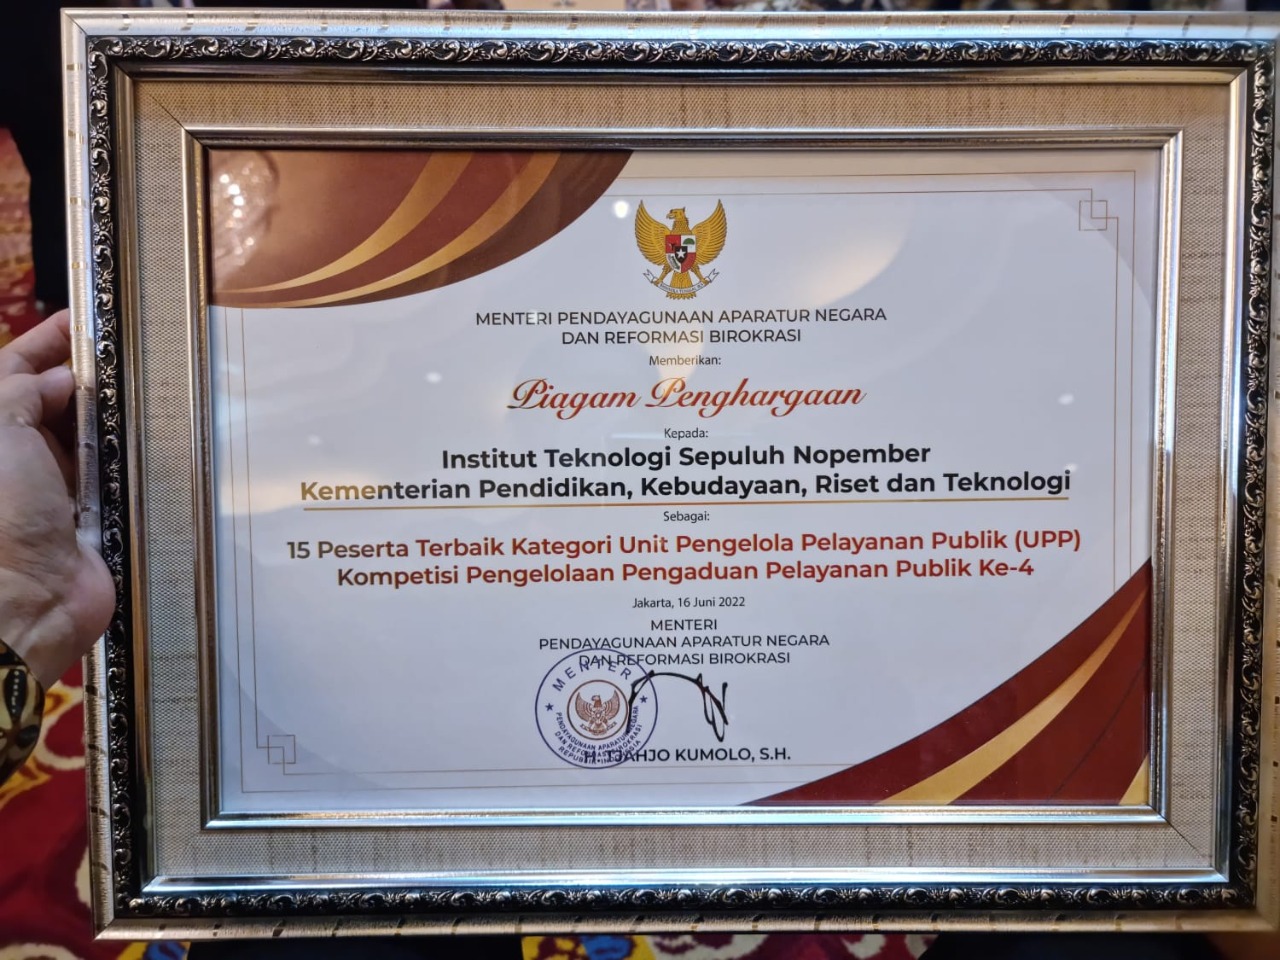 Piagam penghargaan yang diterima ITS sebagai salah satu instansi terbaik dalam pengelolaan pelayanan publik di Indonesia